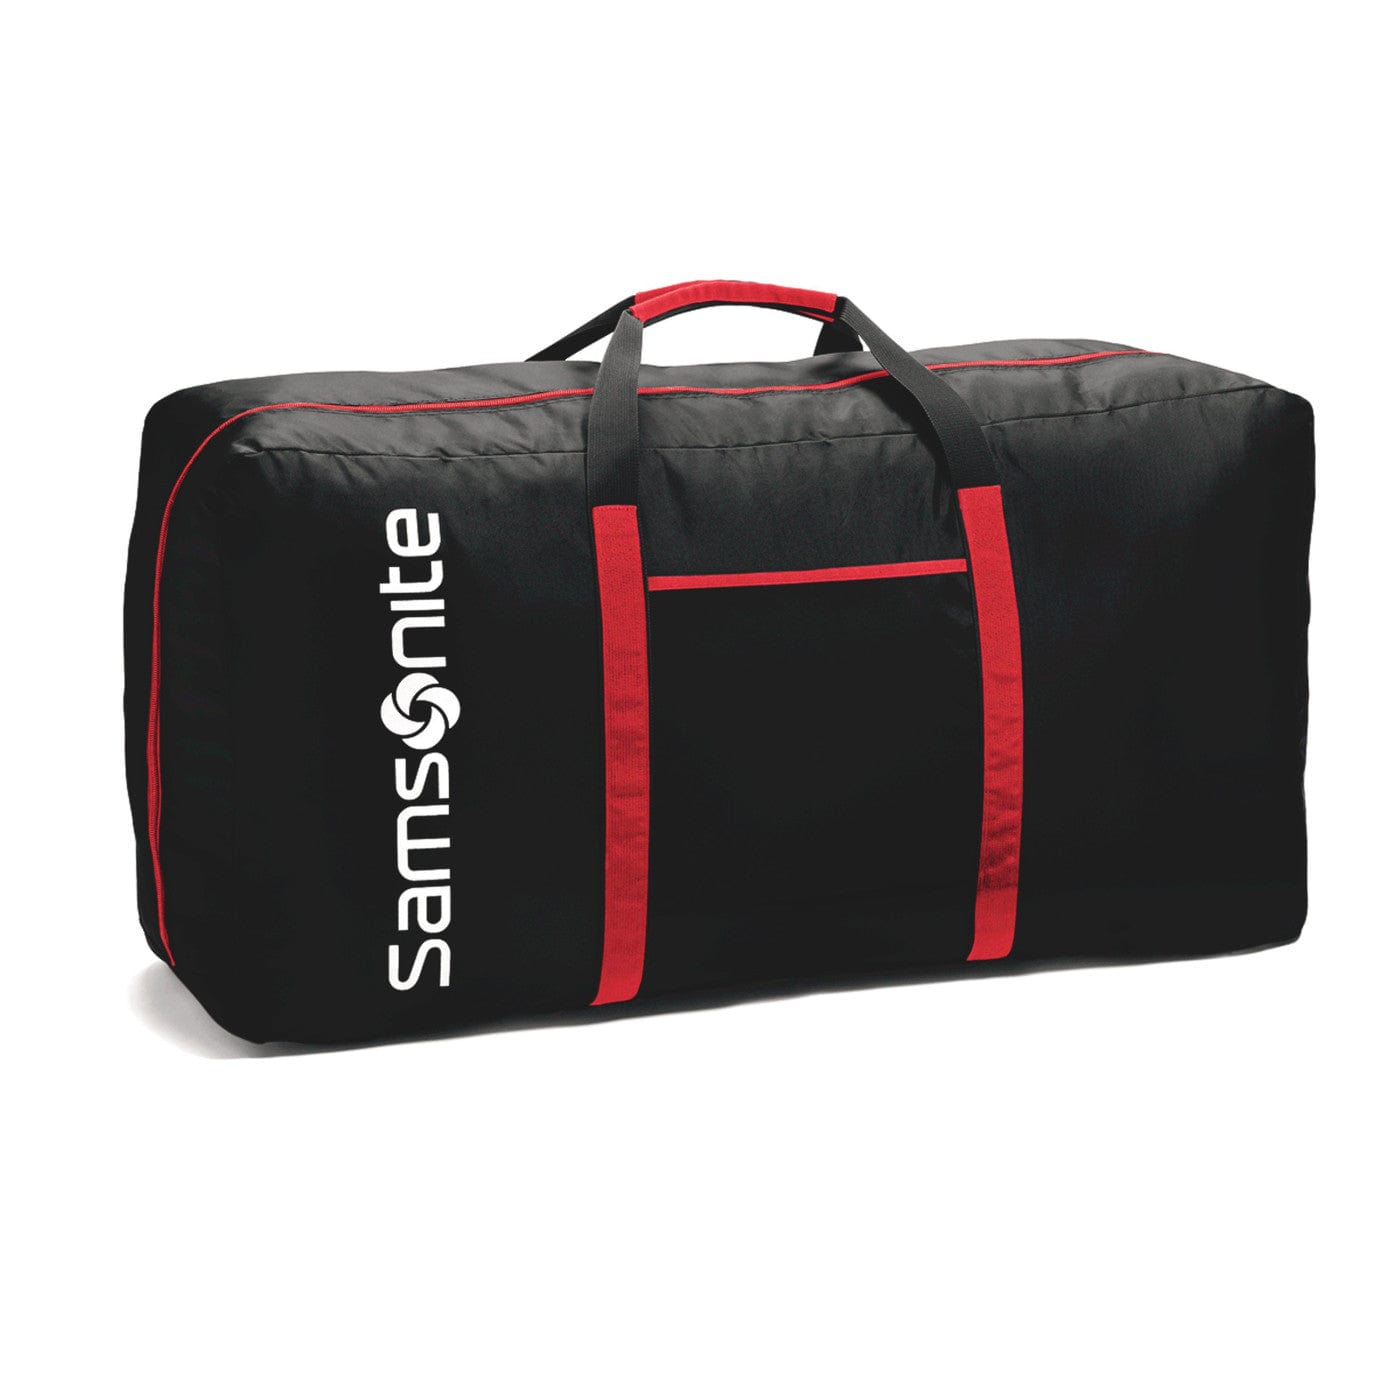 Samsonite Bags One Size / Black Samsonite - Tote-A-Ton Duffel Bag